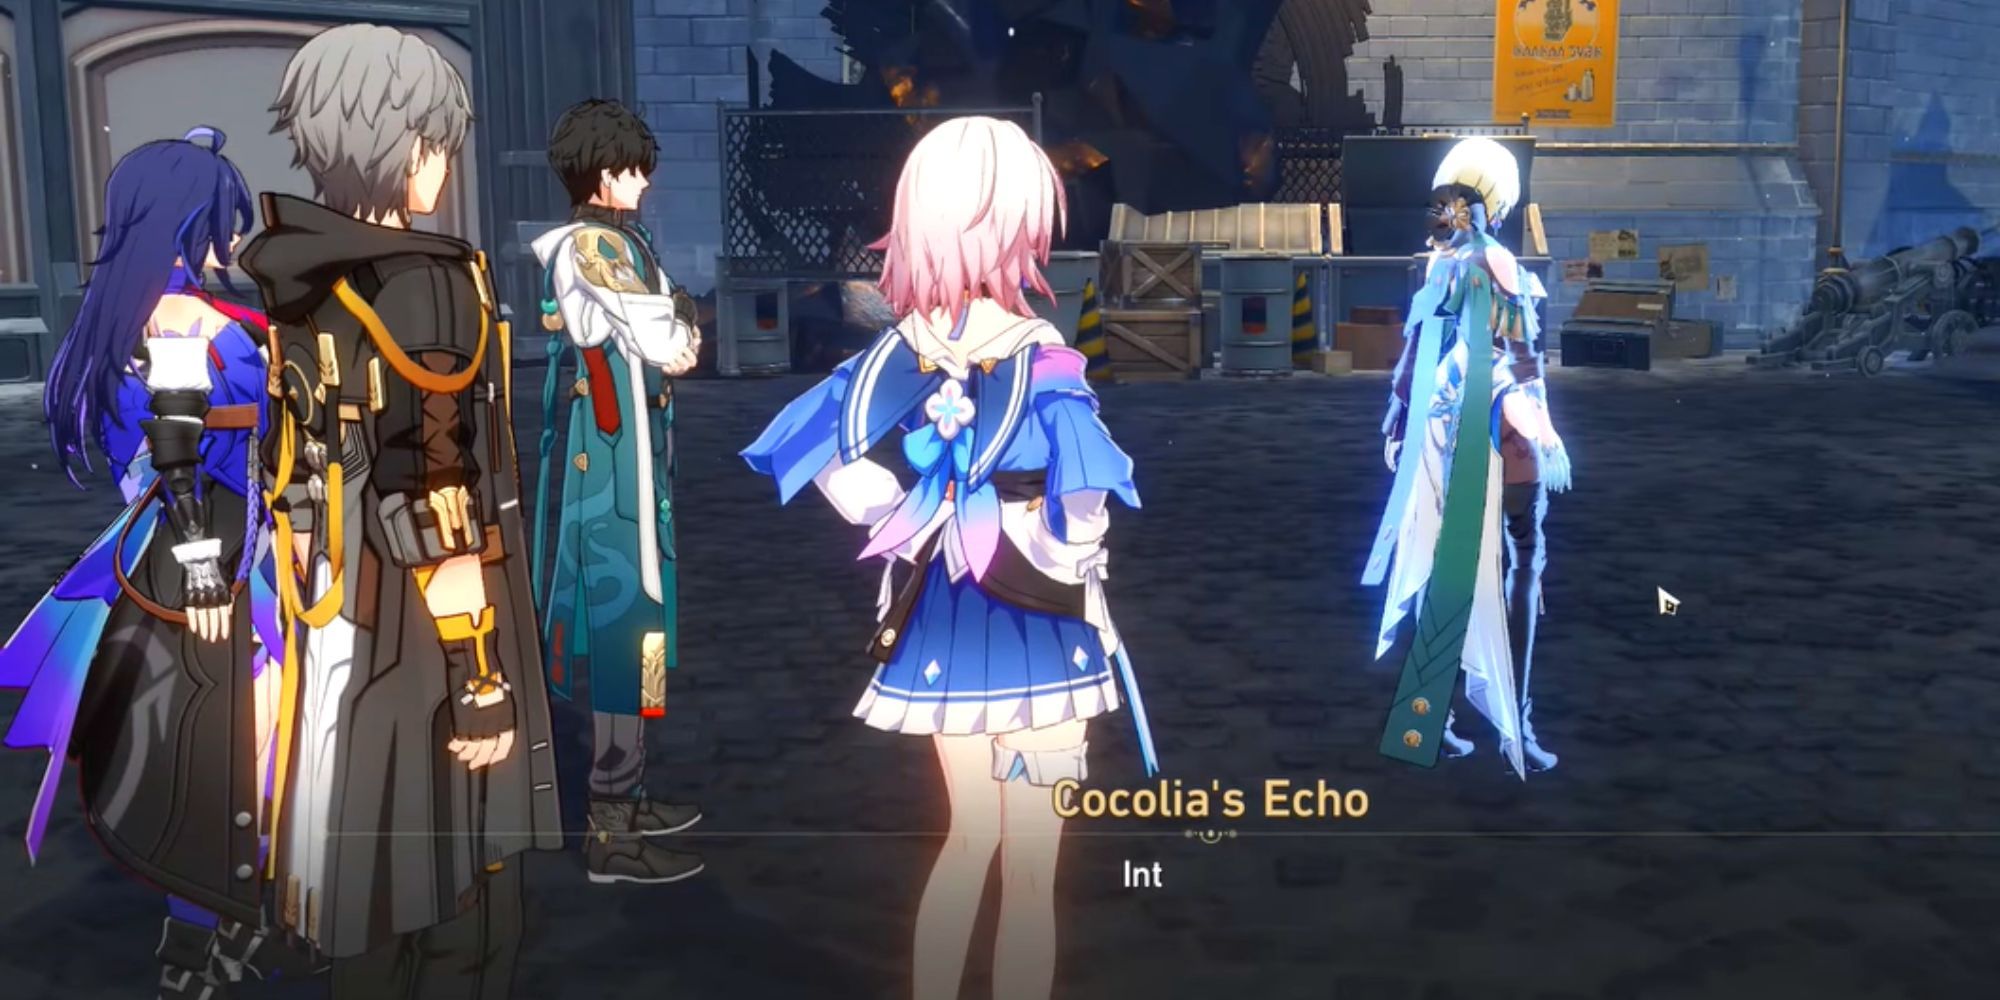 Cocolia's Echo